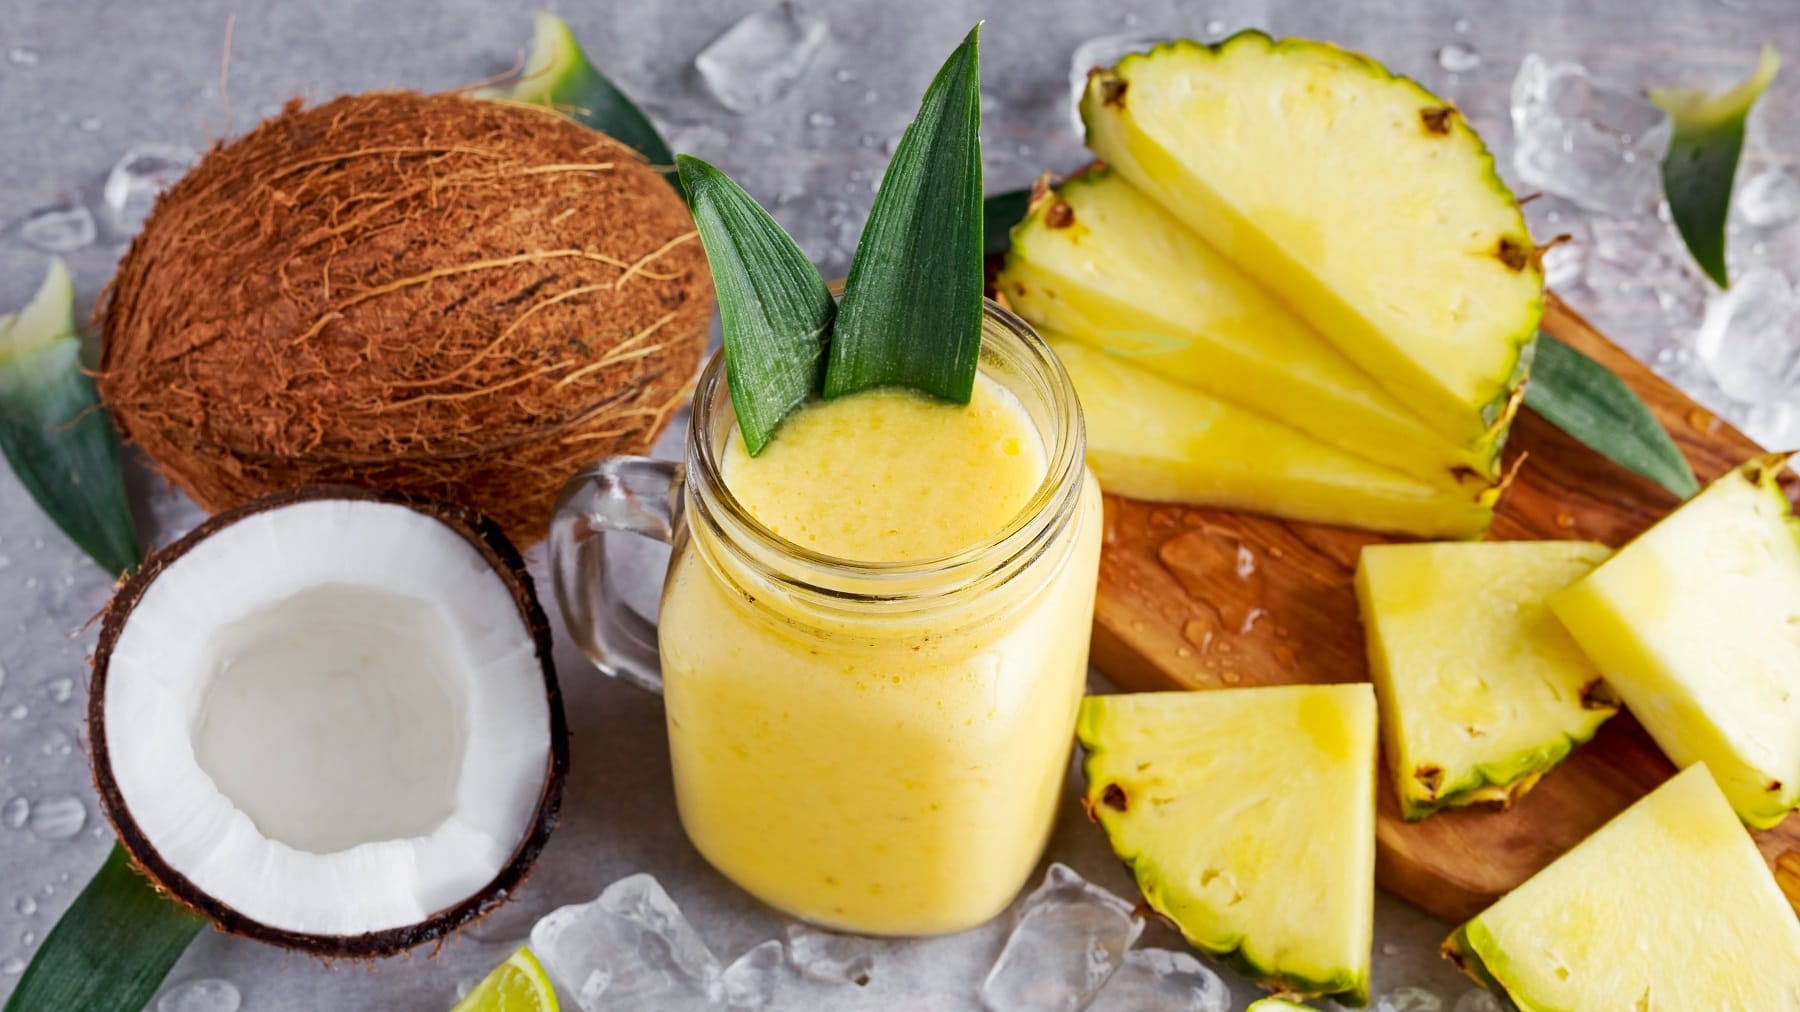 Ein Glas mit dem Ananas-Kokos-Smoothie auf einem grauen Tisch mit den beiden Früchten und Eiswürfeln.